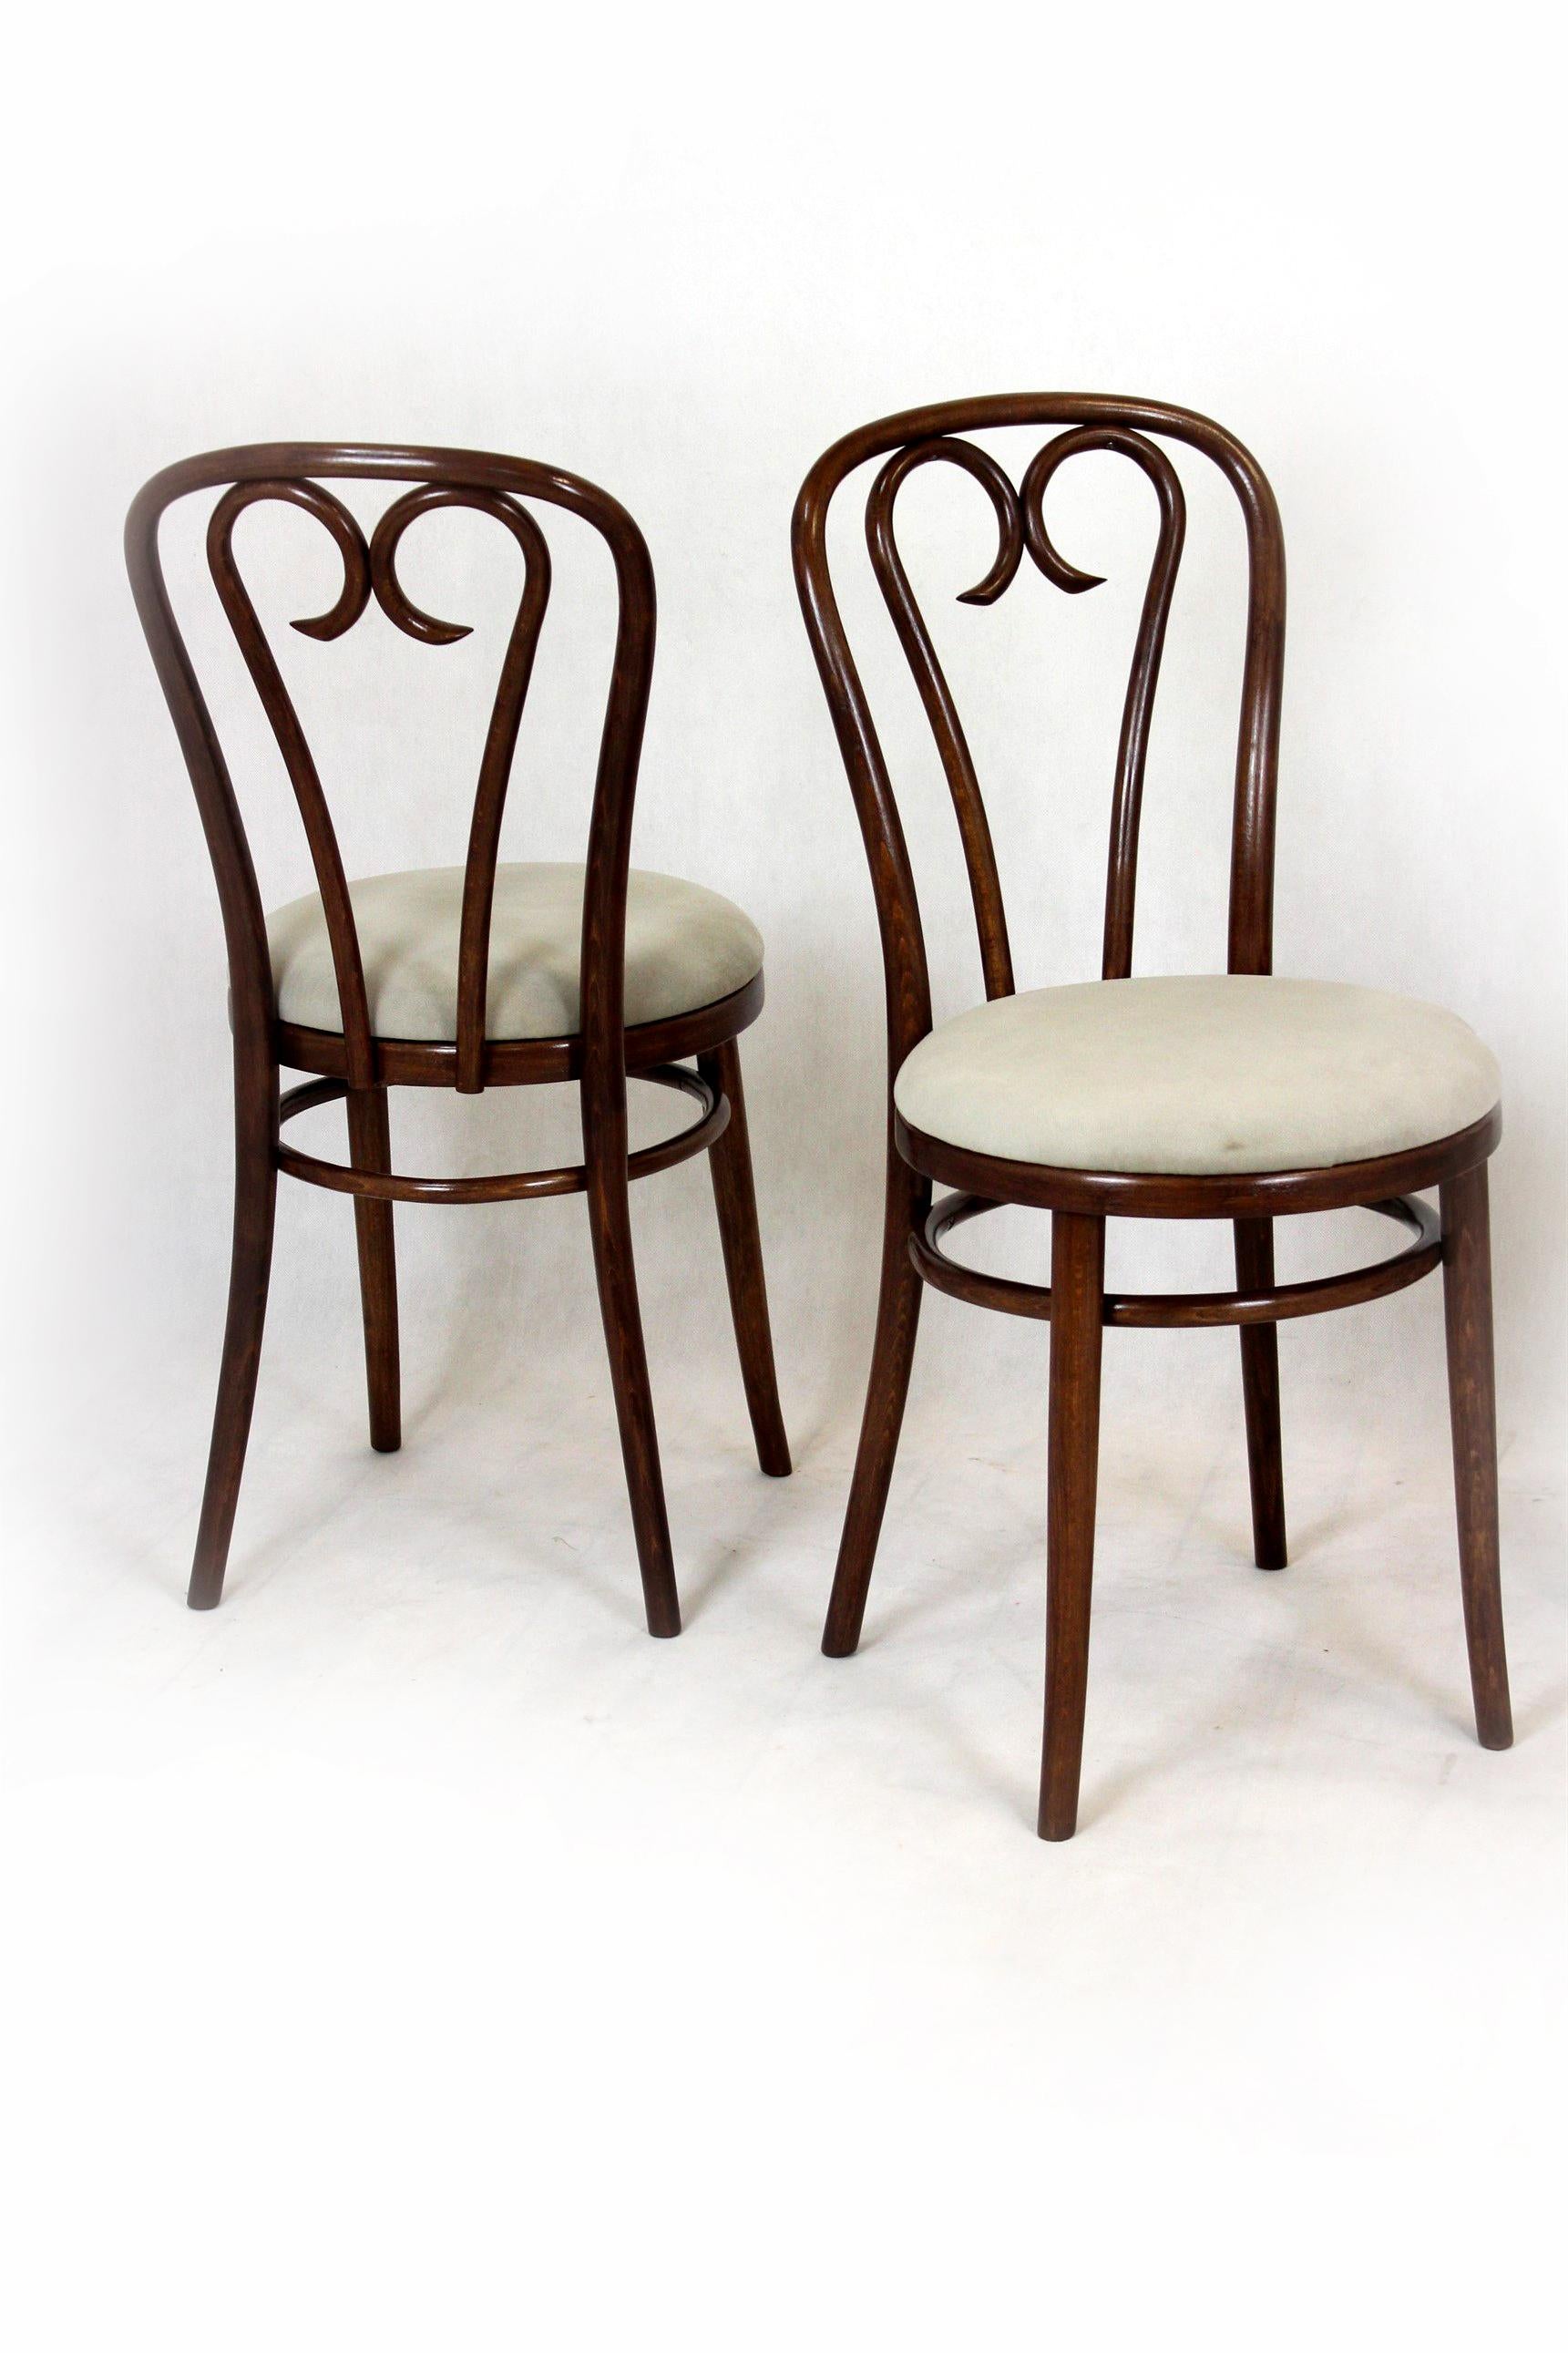 Un ensemble de quatre chaises en bois de hêtre courbé. Les chaises ont été entièrement restaurées, les nouveaux sièges sont garnis de tissu de haute qualité, le bois est laqué, la finition est satinée.
 